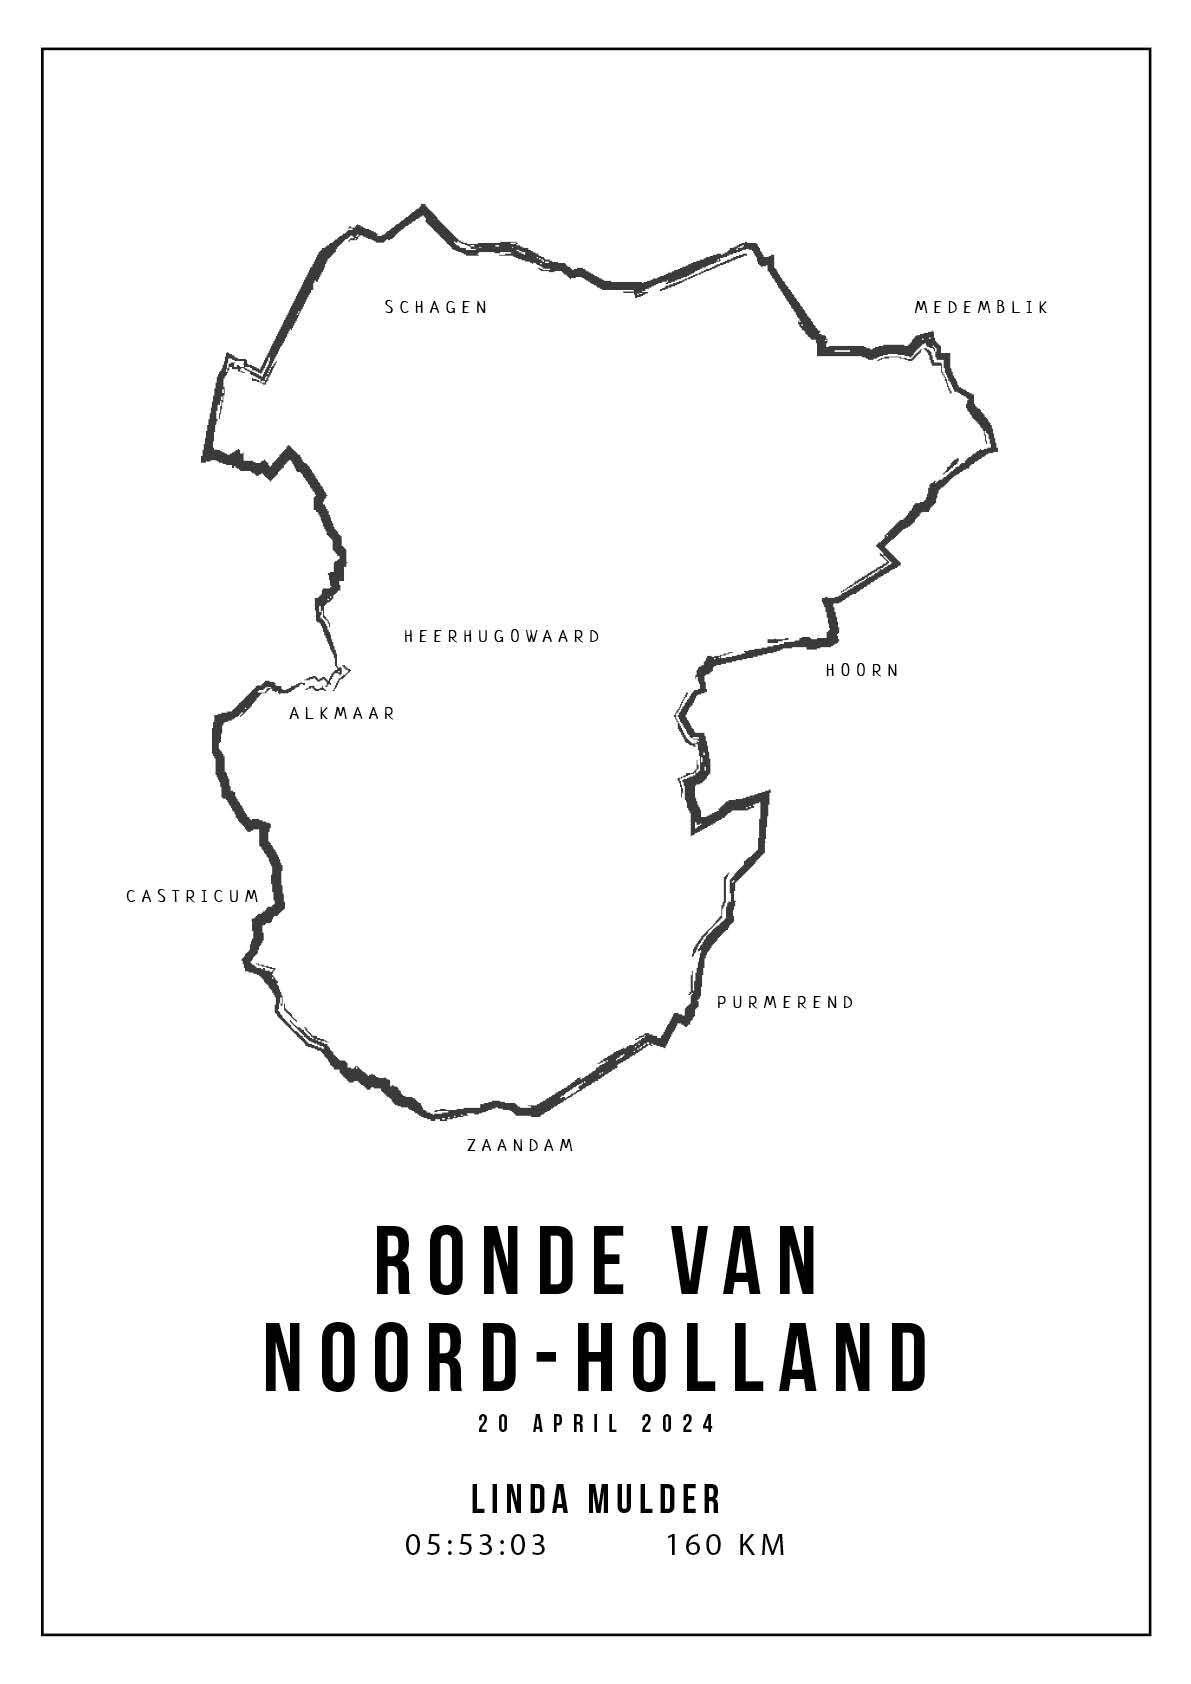 Ronde van Noord-Holland - Handmade Drawing - Poster